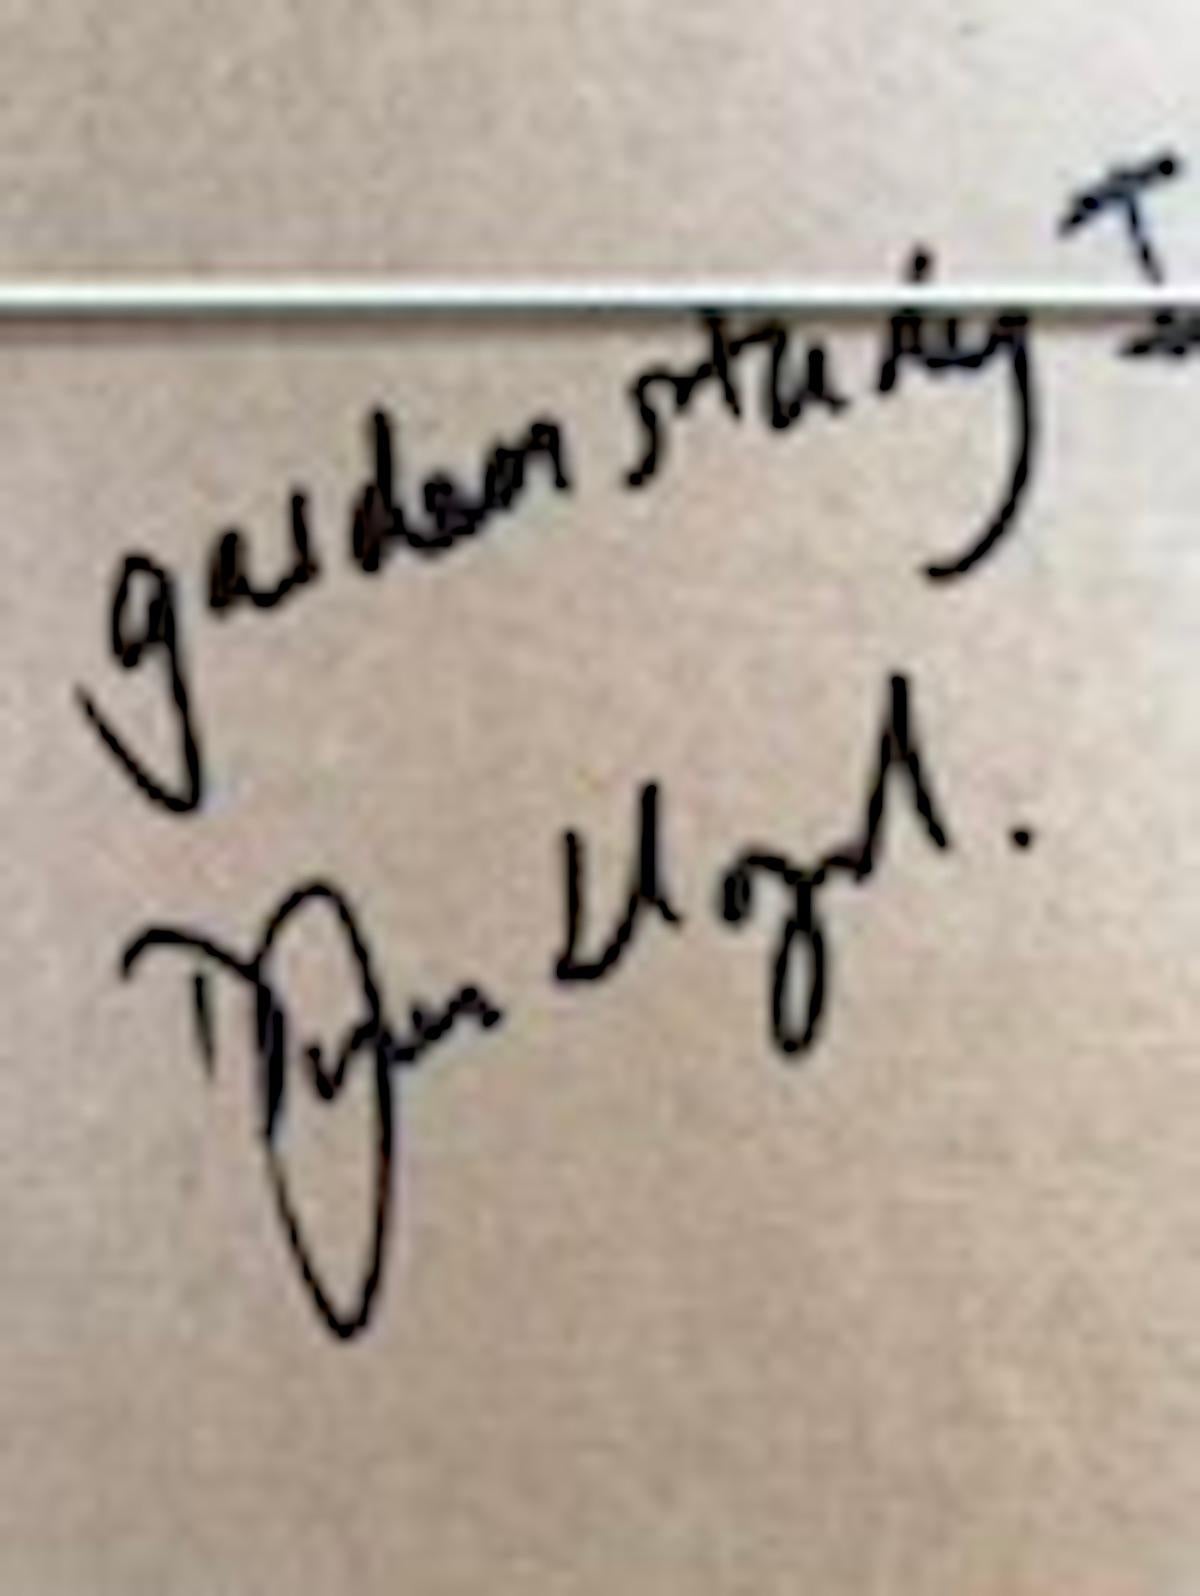 Sommergartenstudie II von Dylan Lloyd [2022]
original und handsigniert vom Künstler
Öl auf Leinwand
Bildgröße: H:30 cm x B:24 cm
Gesamtgröße des ungerahmten Werks: H:30 cm x B:24 cm x T:1,5cm
Rahmengröße: H:41 cm x B:36 cm x T:3,5cm
Verkauft